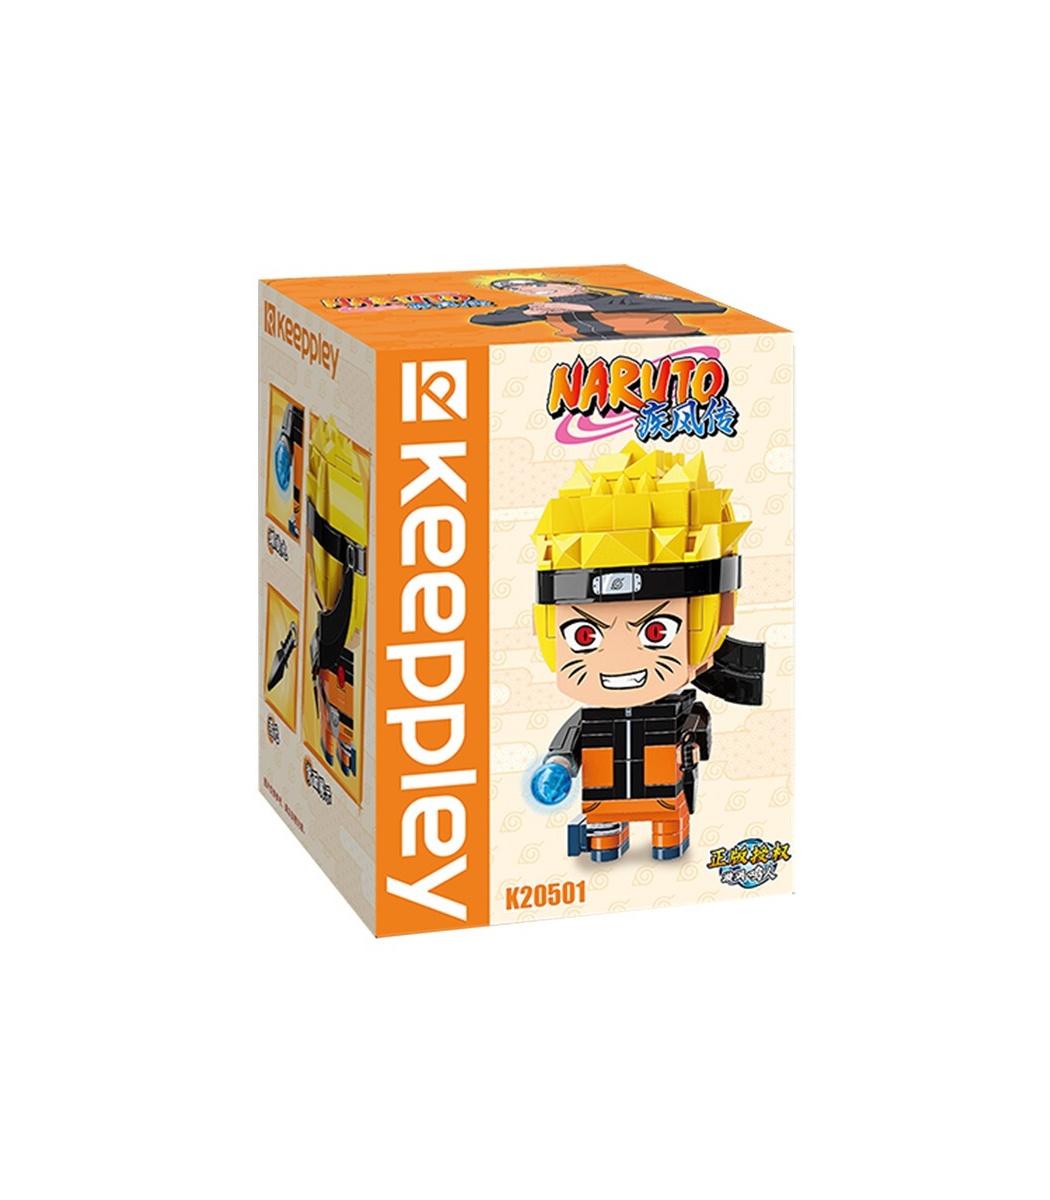 Naruto: Shippuden Naruto Uzumaki Building Blocks Toy Set